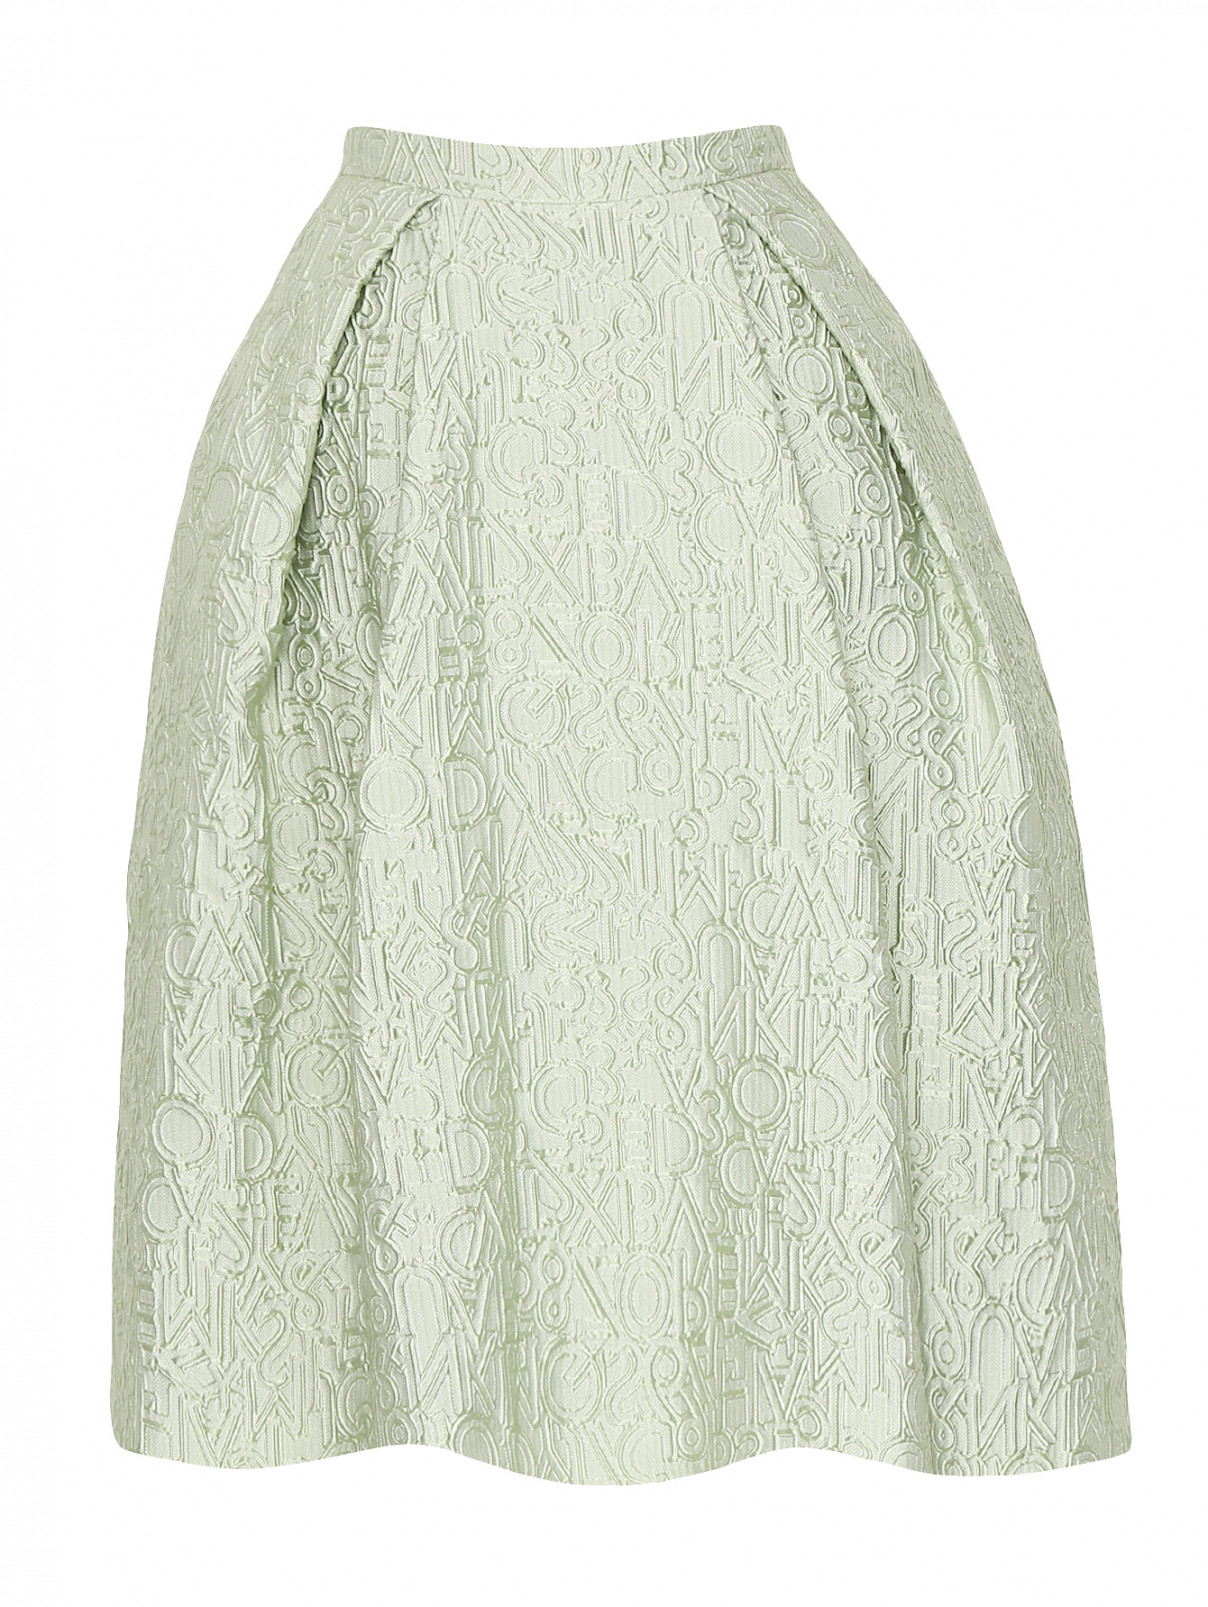 Юбка-миди из фактурной ткани Mary Katrantzou  –  Общий вид  – Цвет:  Зеленый